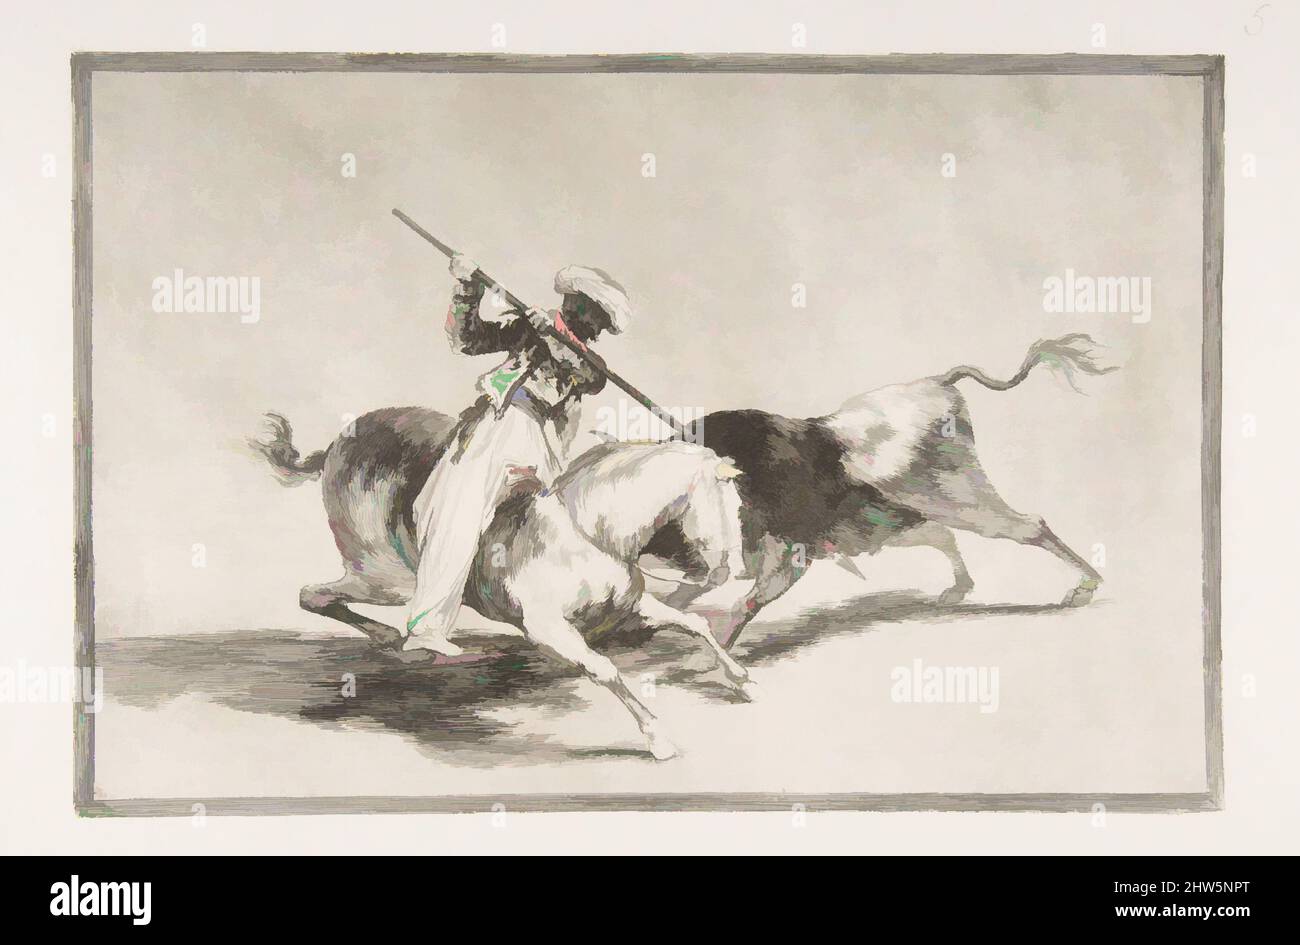 Art inspiré par la planche 5 de 'la Tauromaquia': Le Moor Gazul plein de sens est le premier à craquer des taureaux selon les règles, 1816, Etching, craie d'aquatint et de point sec, plaque: 9 3/4 x 13 7/8 po. (24,7 x 35,2 cm), Prints, Goya (Francisco de Goya y Lucientes) (Espagnol, Fuendetodos, oeuvres classiques modernisées par Artotop avec une touche de modernité. Formes, couleur et valeur, impact visuel accrocheur sur l'art émotions par la liberté d'œuvres d'art d'une manière contemporaine. Un message intemporel qui cherche une nouvelle direction créative. Artistes qui se tournent vers le support numérique et créent le NFT Artotop Banque D'Images